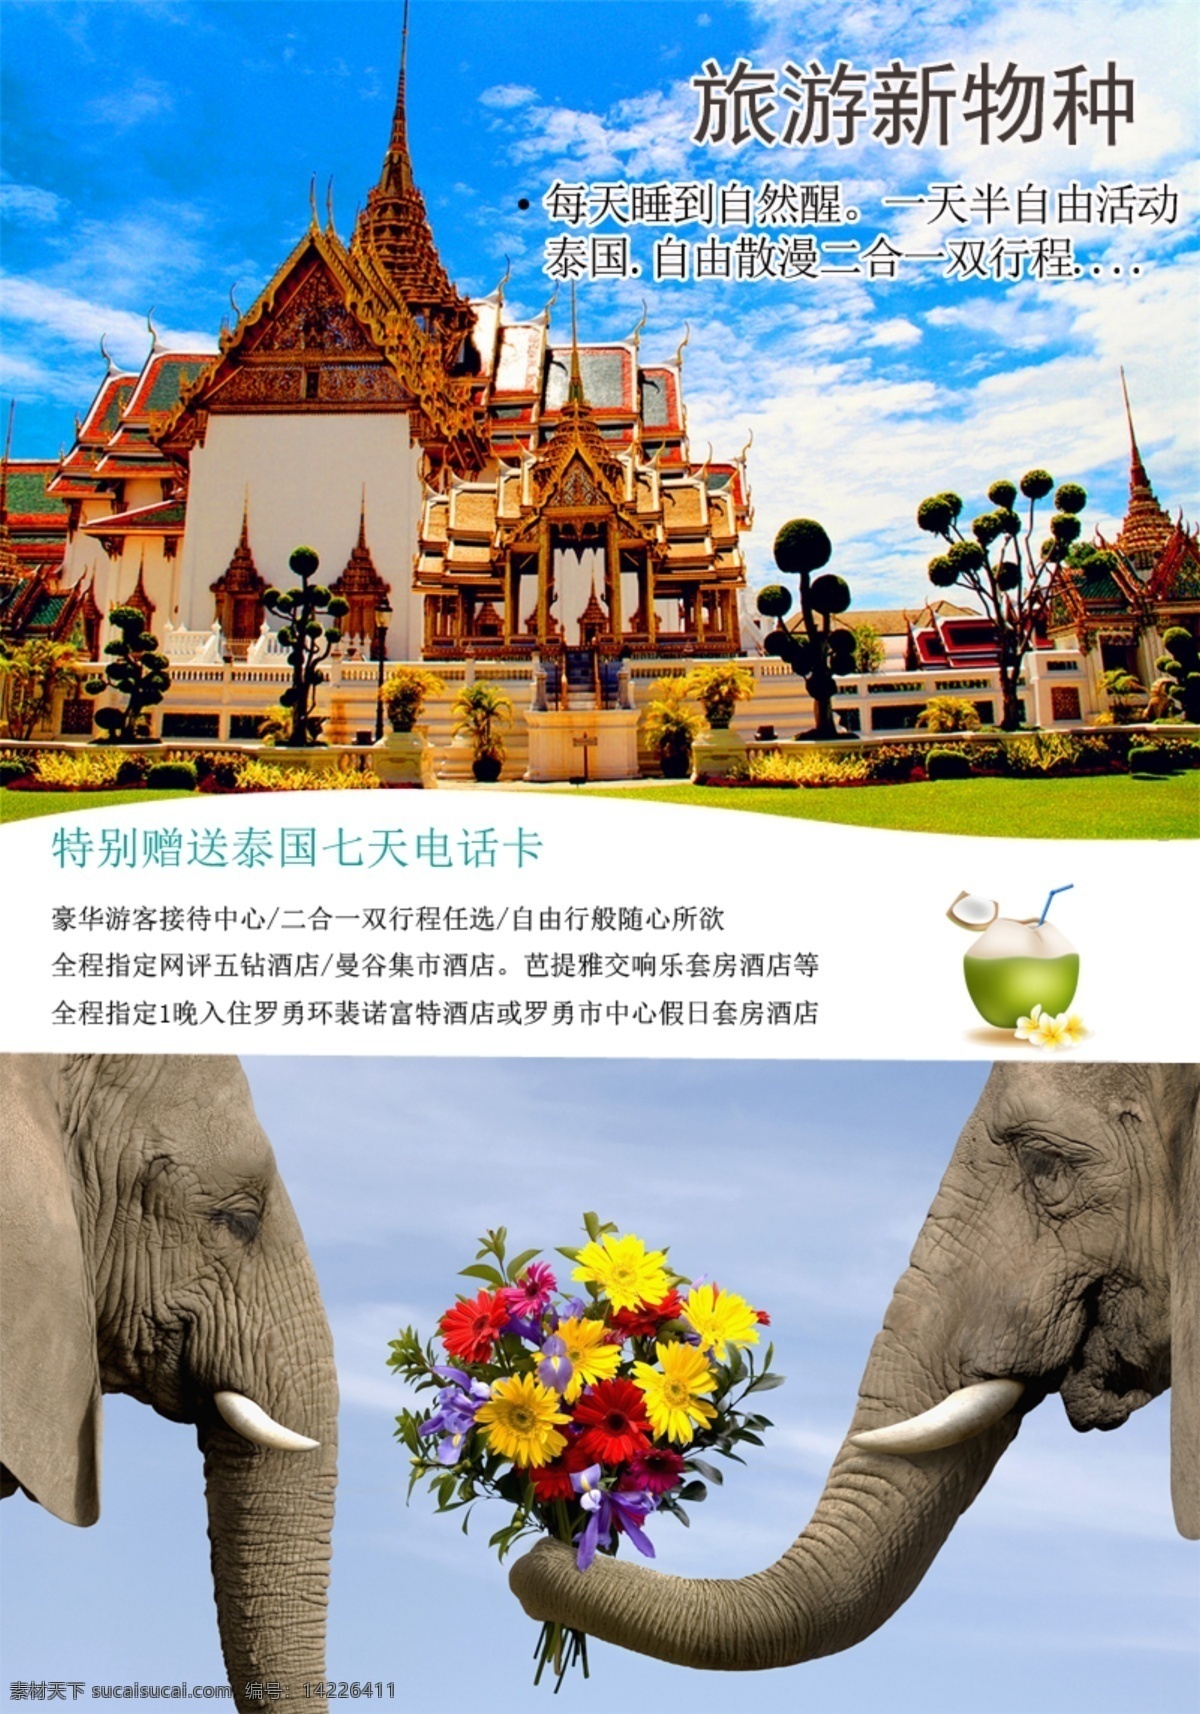 泰国图 泰国 曼谷 旅游 大象